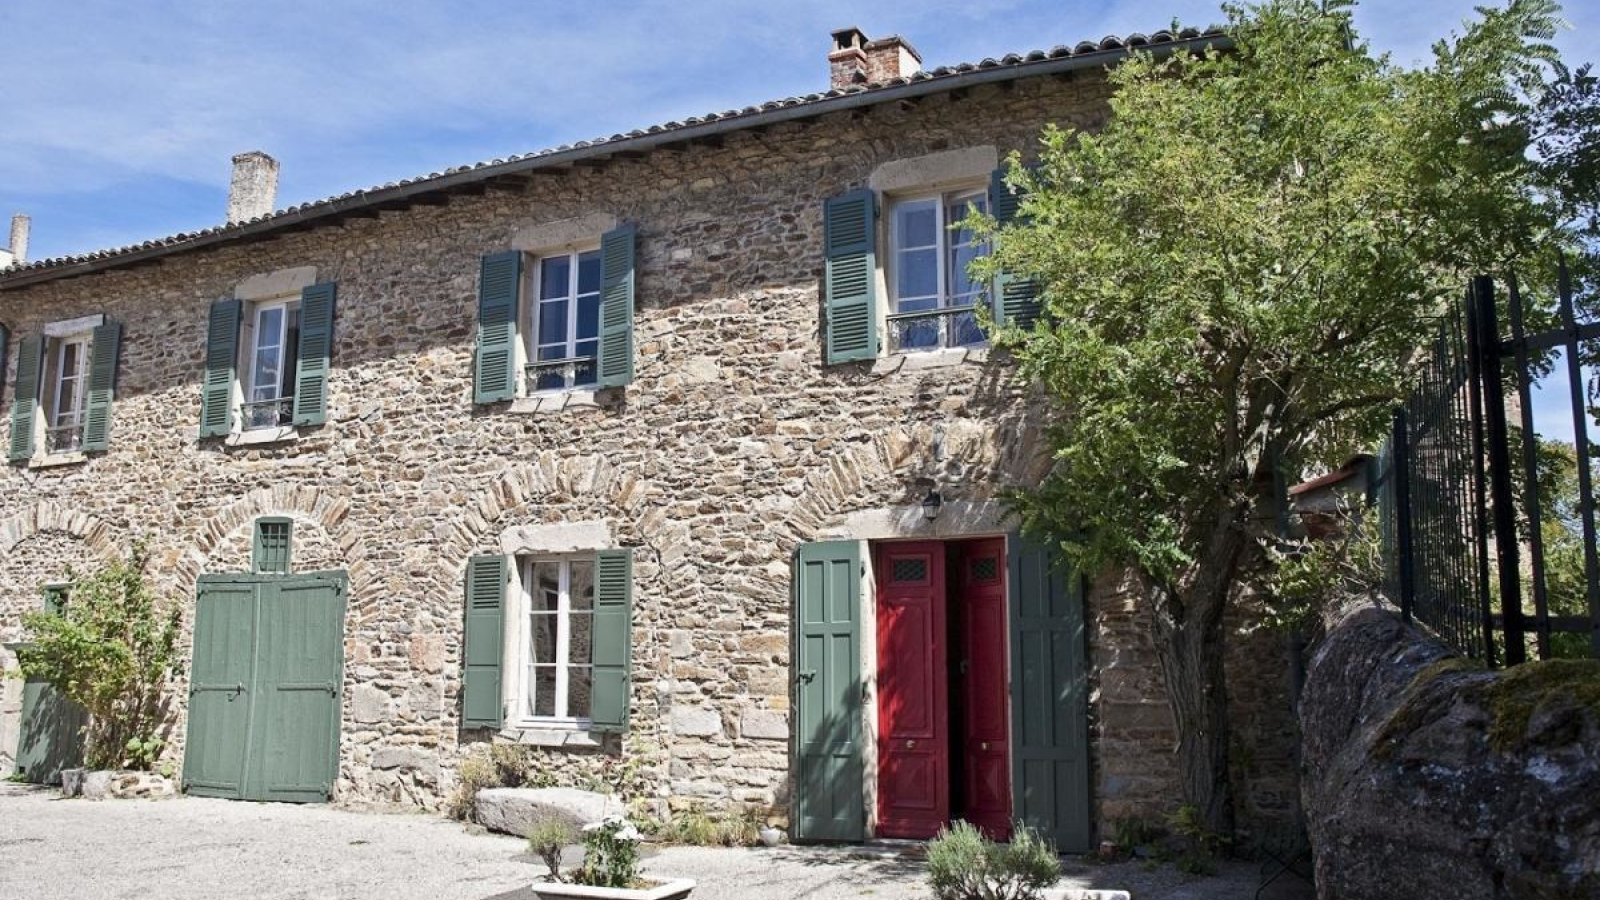 Chambres d'Hôtes 'Château de Riverie' dans le Lyonnais - Rhône : la maison et son entrée dans le petit village de Riverie.